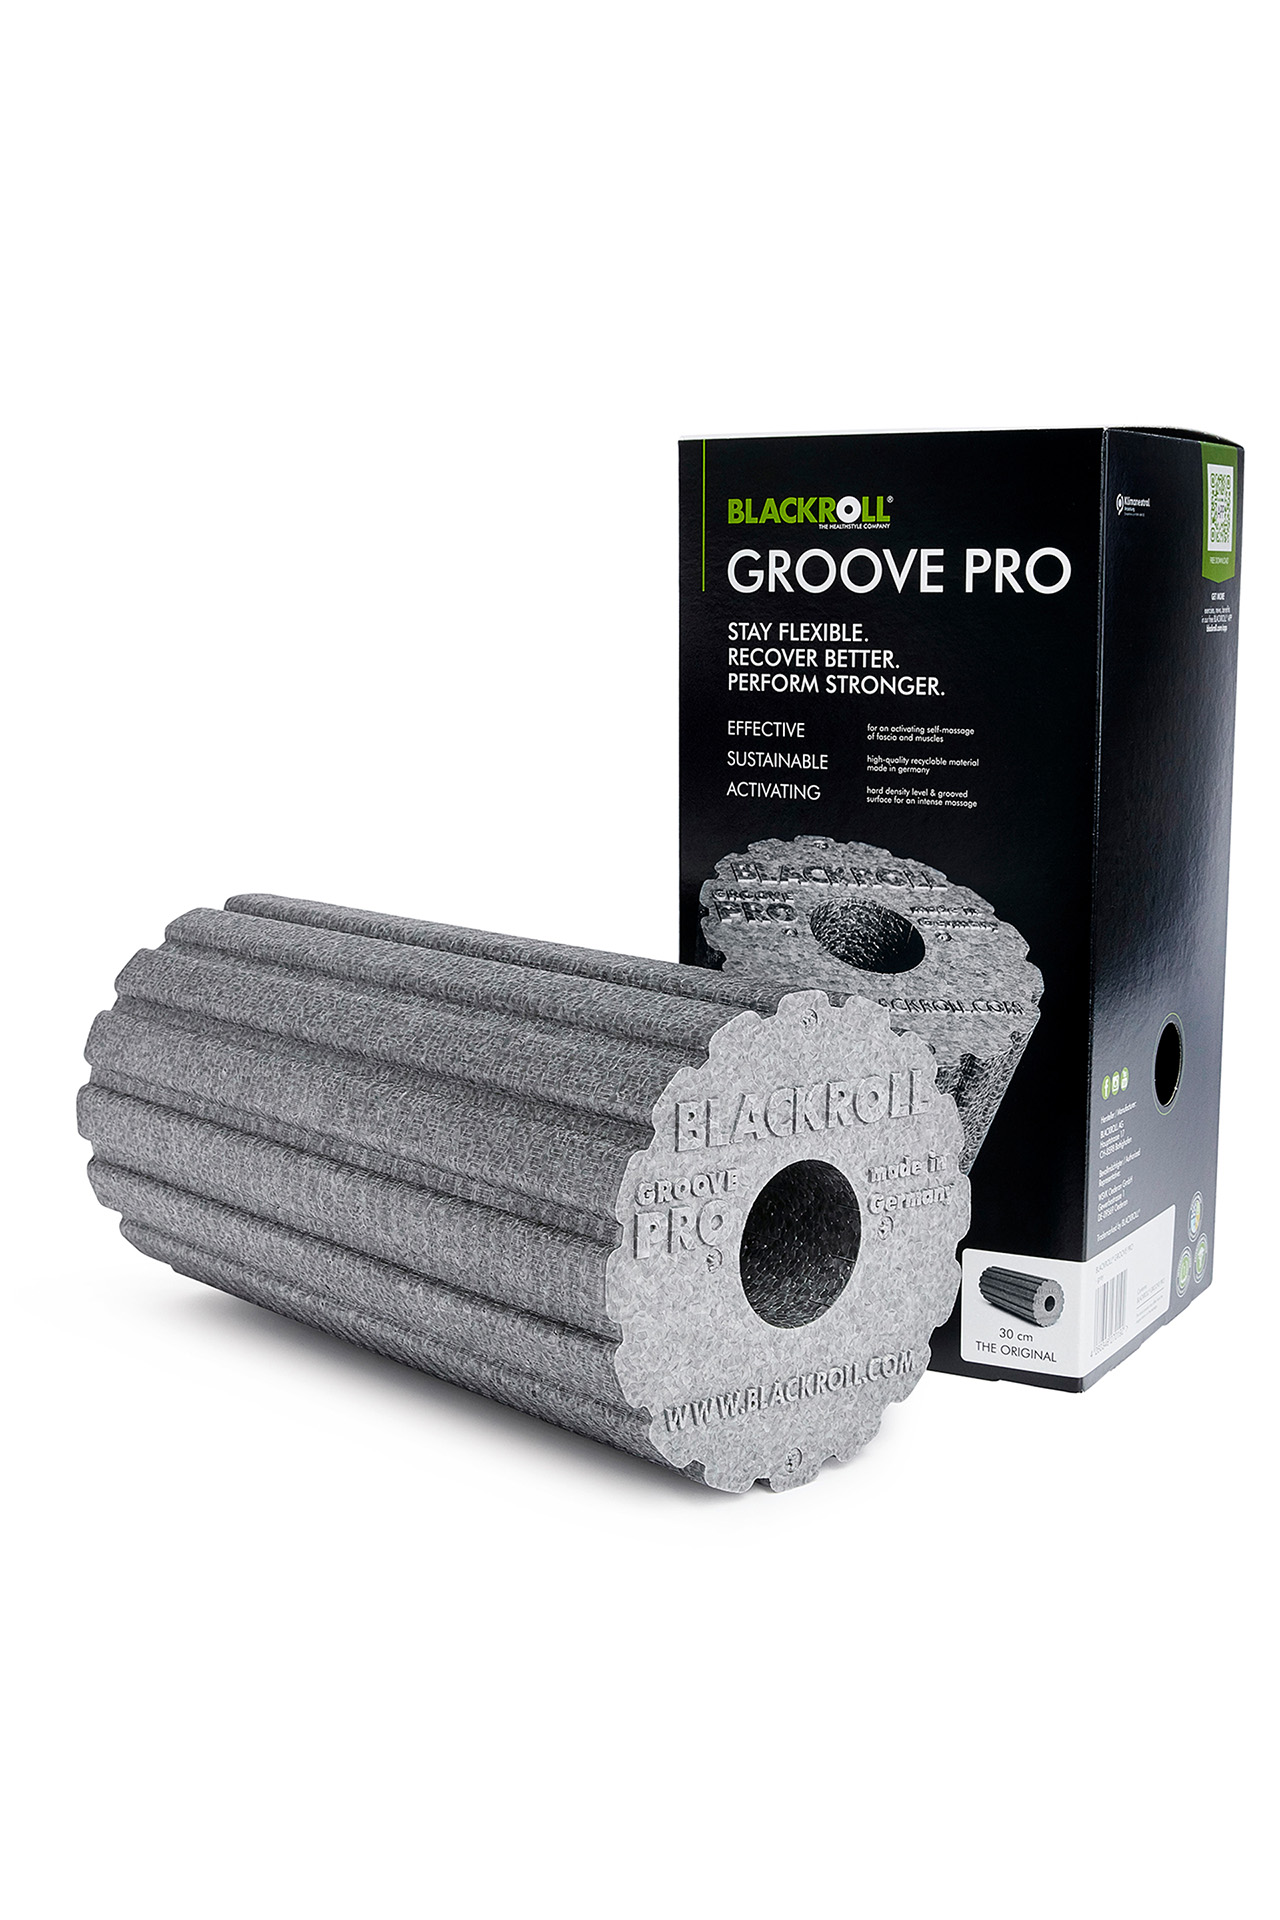 blackroll groove pro grau grey rolle fengbao kung fu shop 1080 wien verpackung rolle